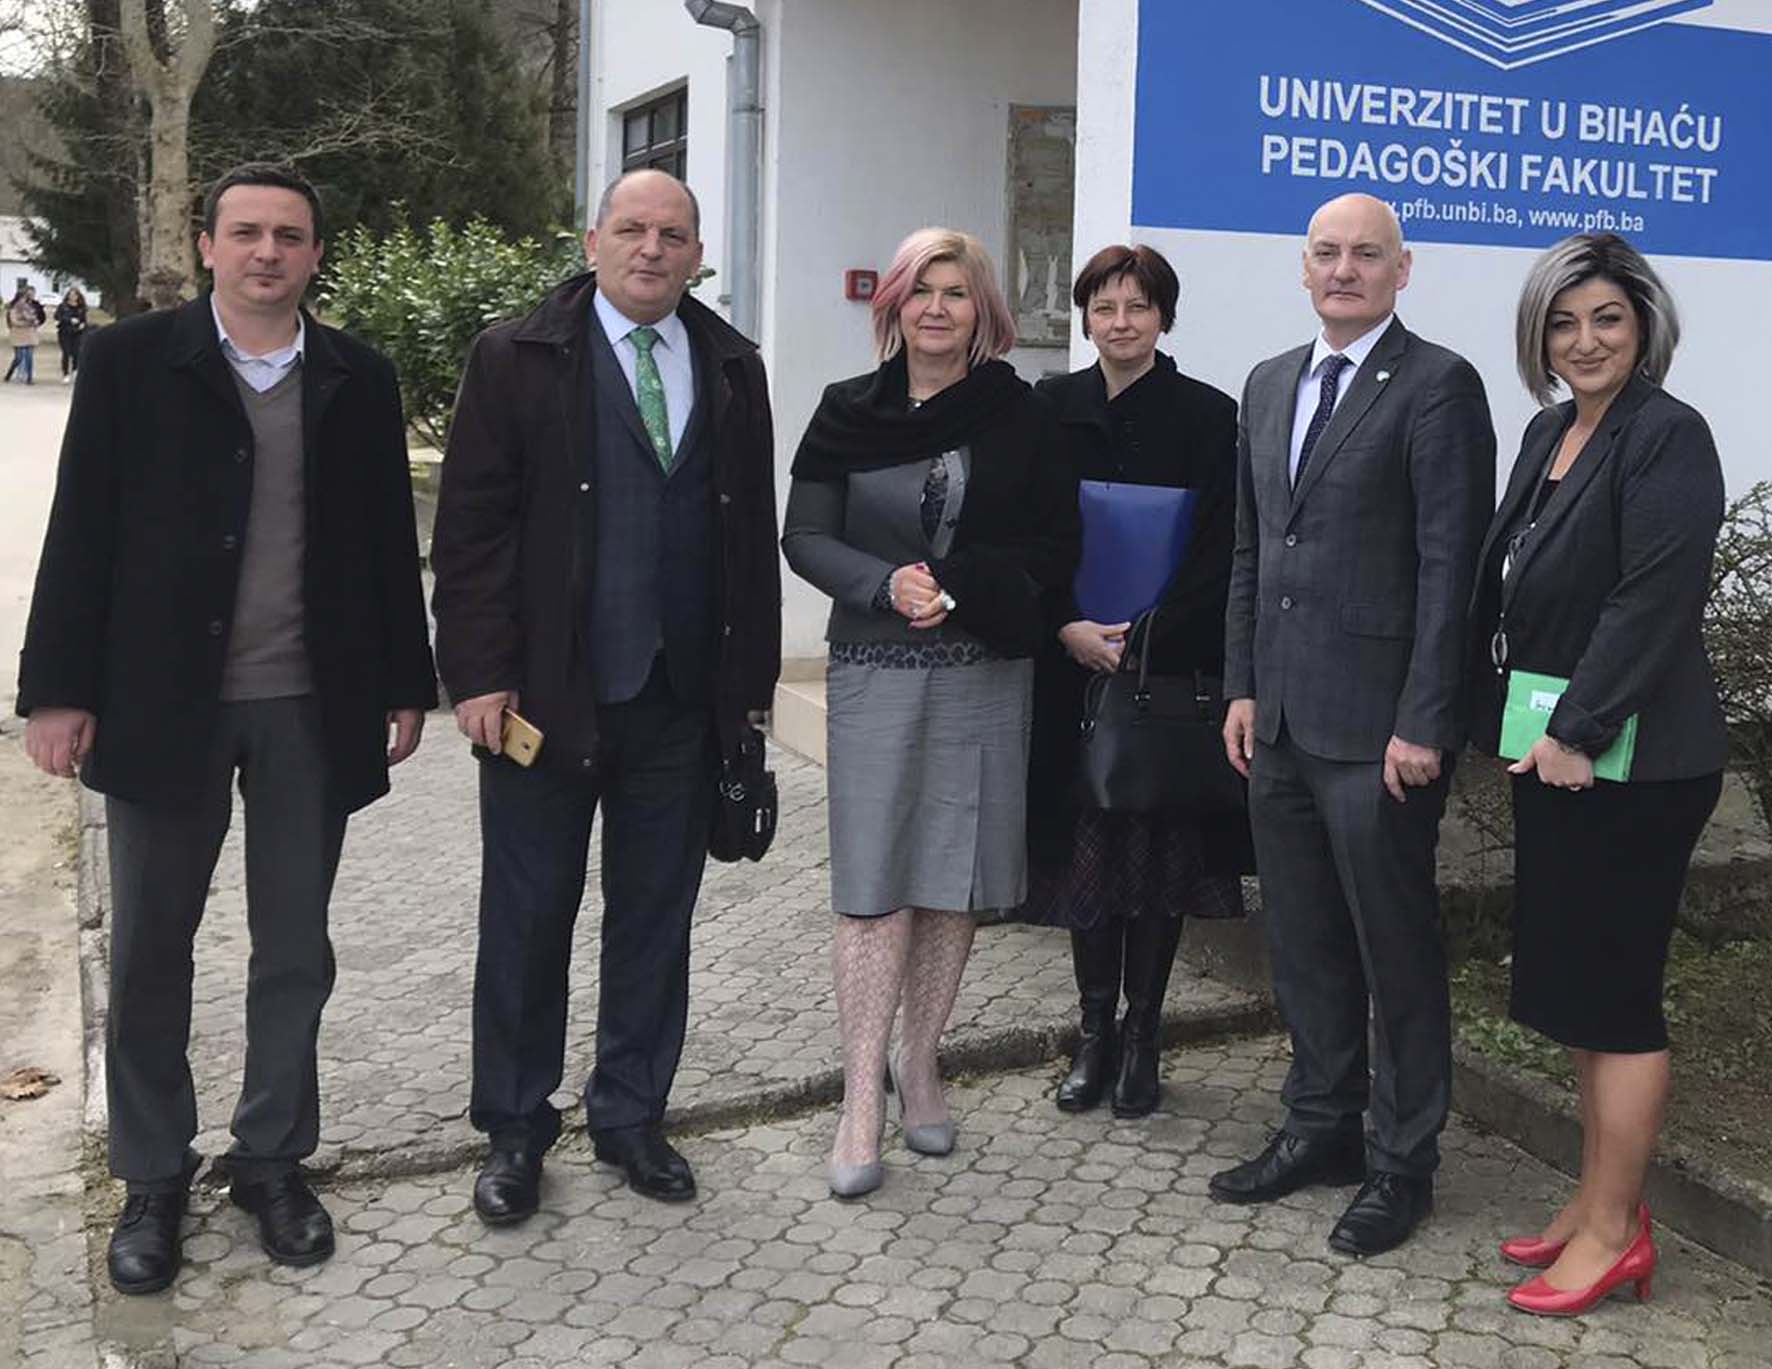 Posjeta Ambasadora Republike Irske u Republici Sloveniji Pedagoškom fakultetu u Bihaću